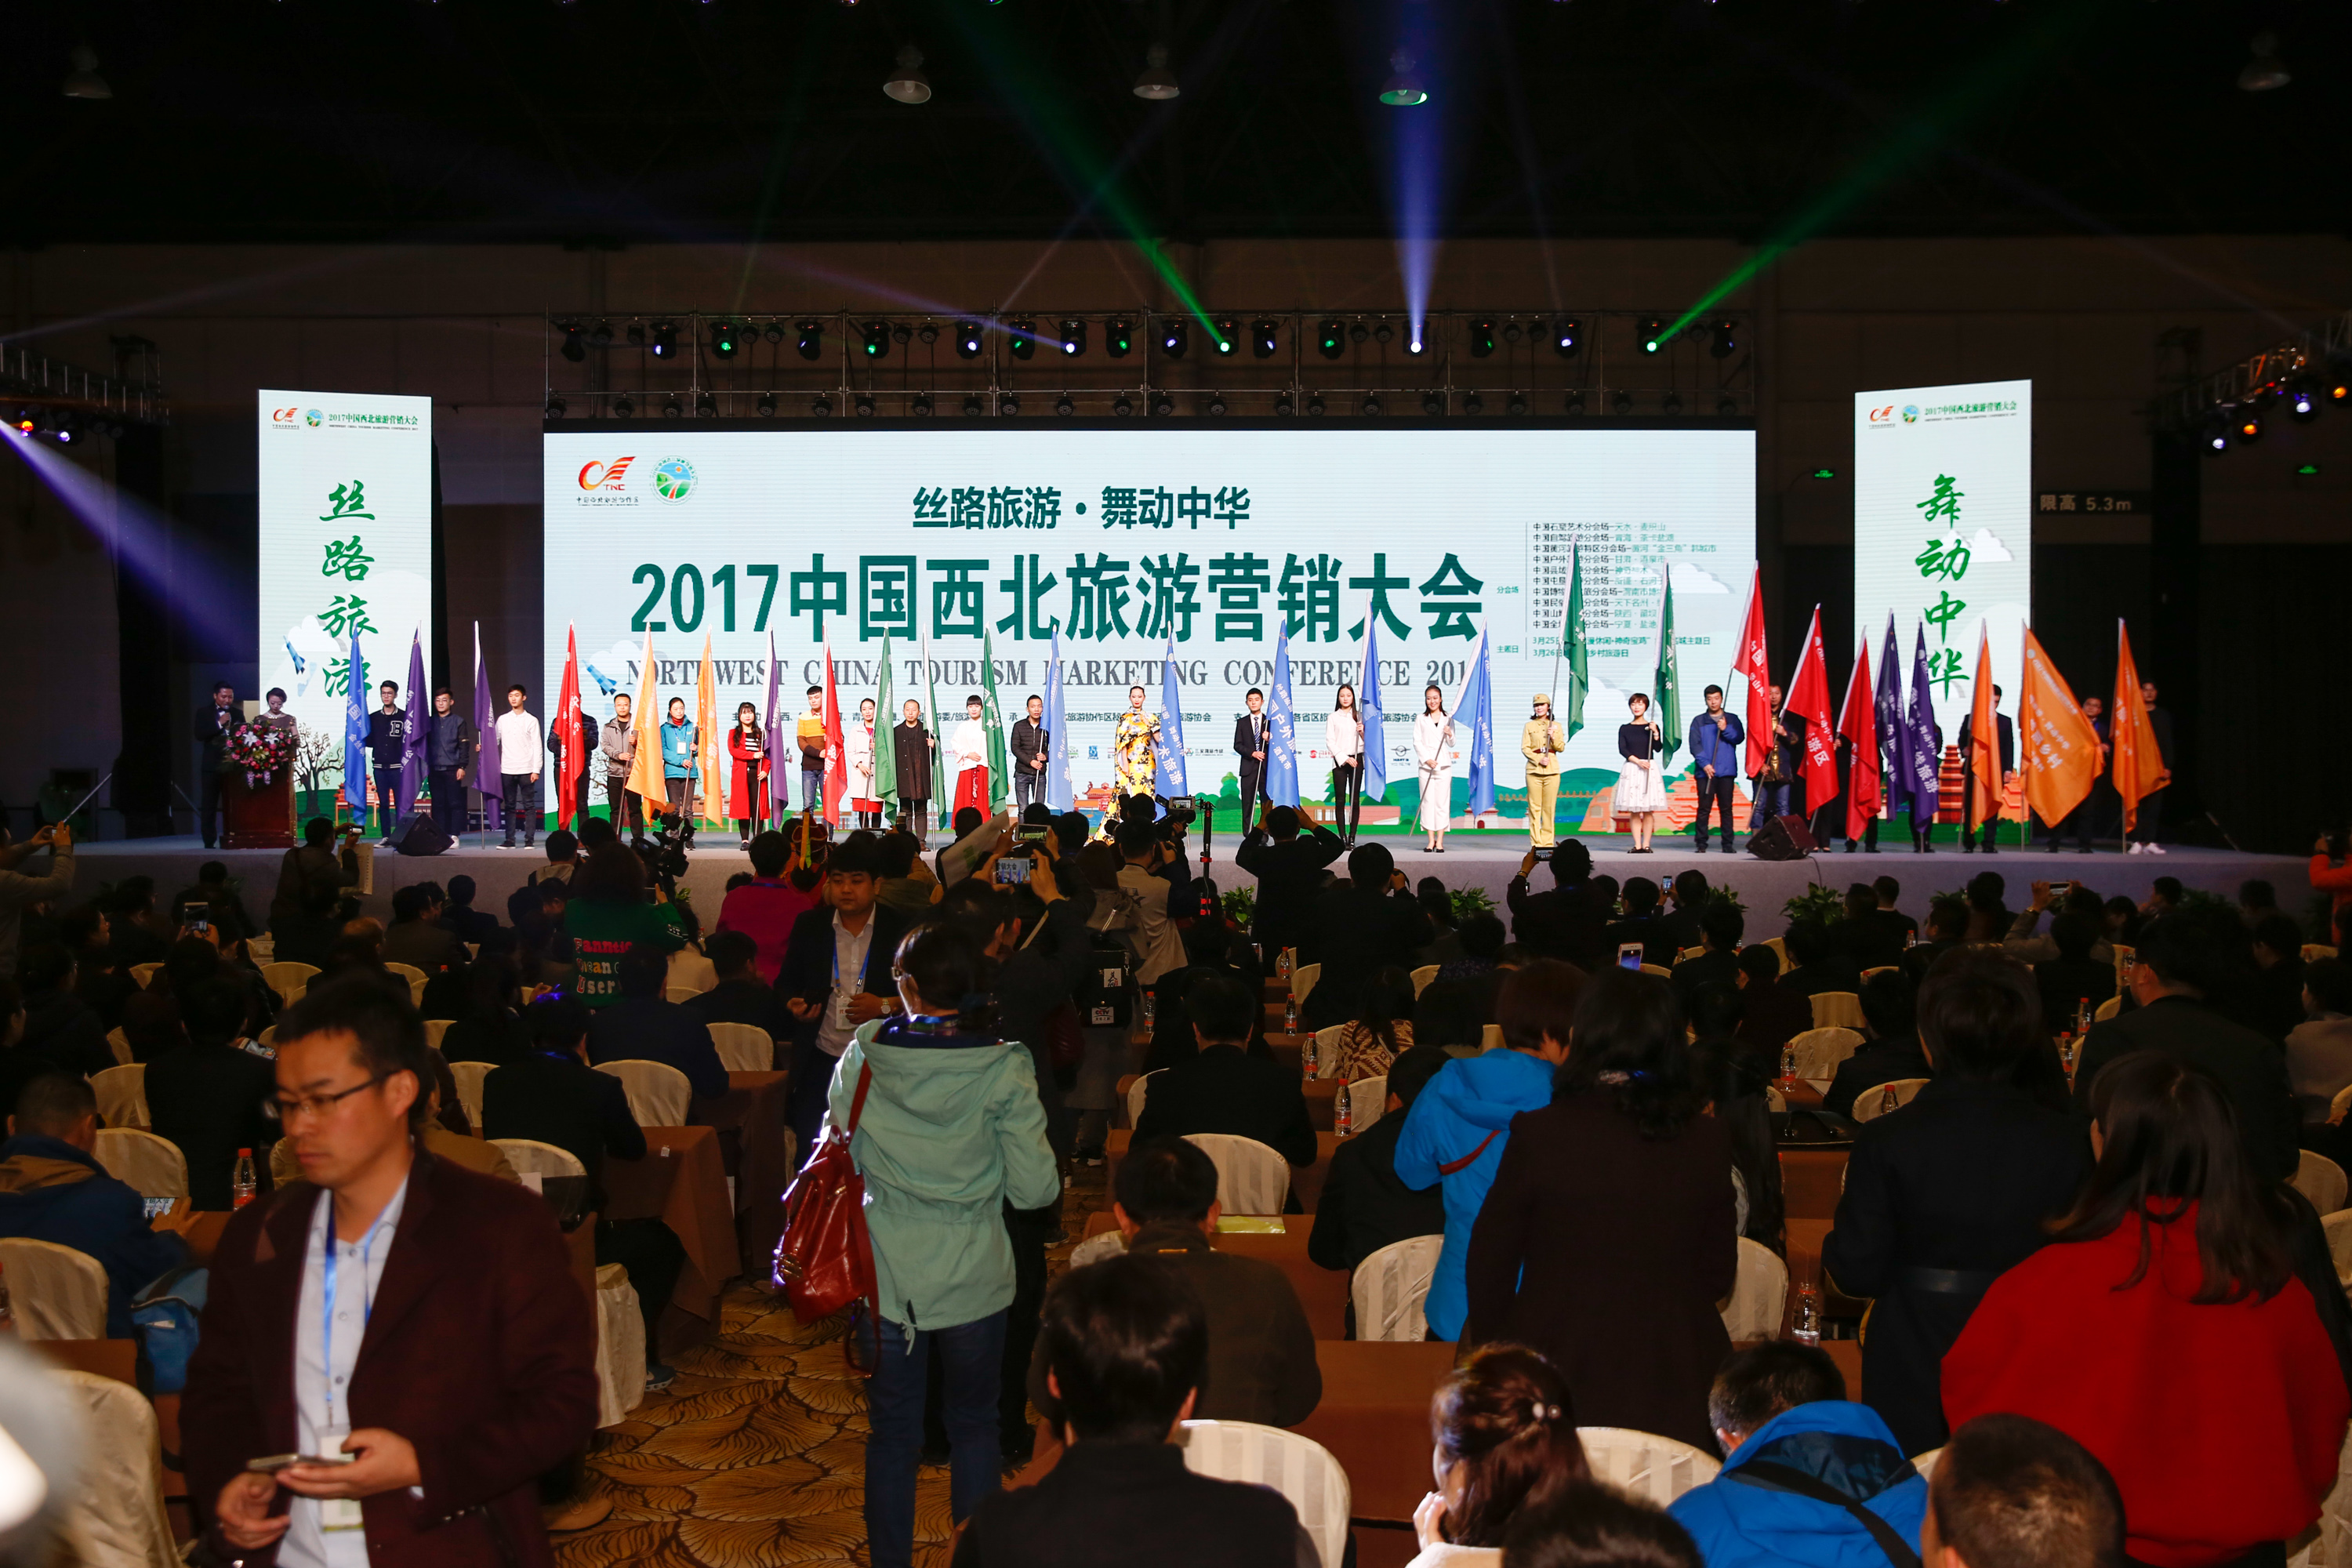 渭南博物馆走进2017中国西北旅游营销大会